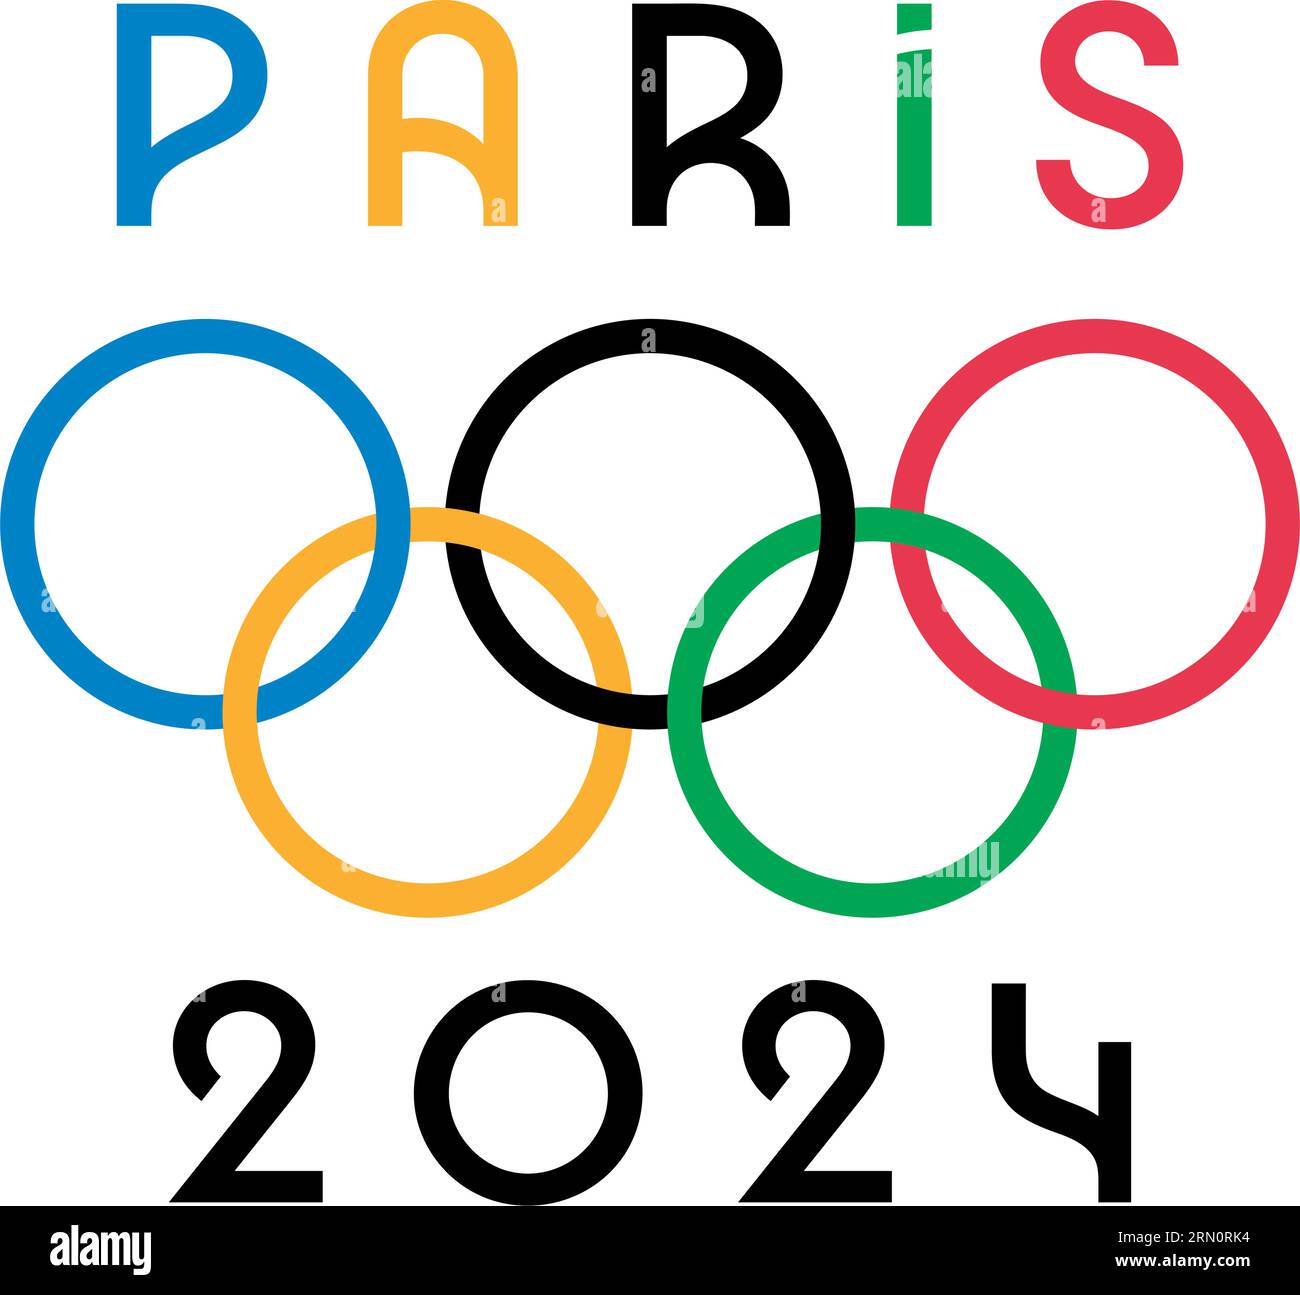 Ucraina, Charkiv - 2 agosto 2023. Parigi, Francia, 2024 Olimpiadi estive logo ufficiale. Illustrazione vettoriale dei giochi olimpici. Illustrazione Vettoriale